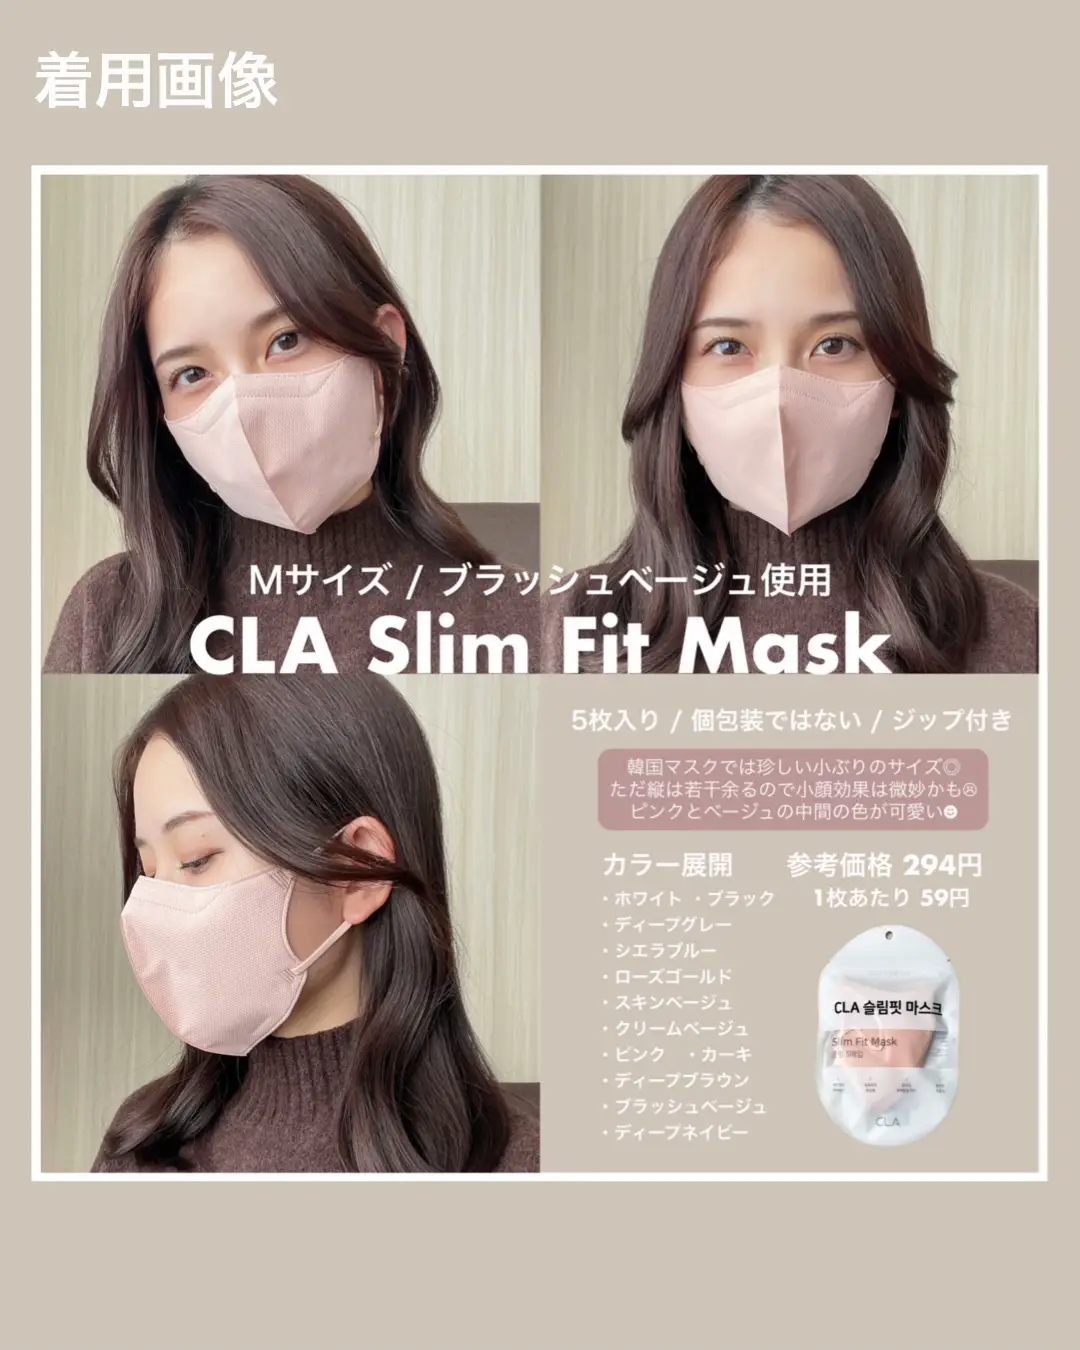 Cla slim fit mask マスク Mサイズ 中型 通販